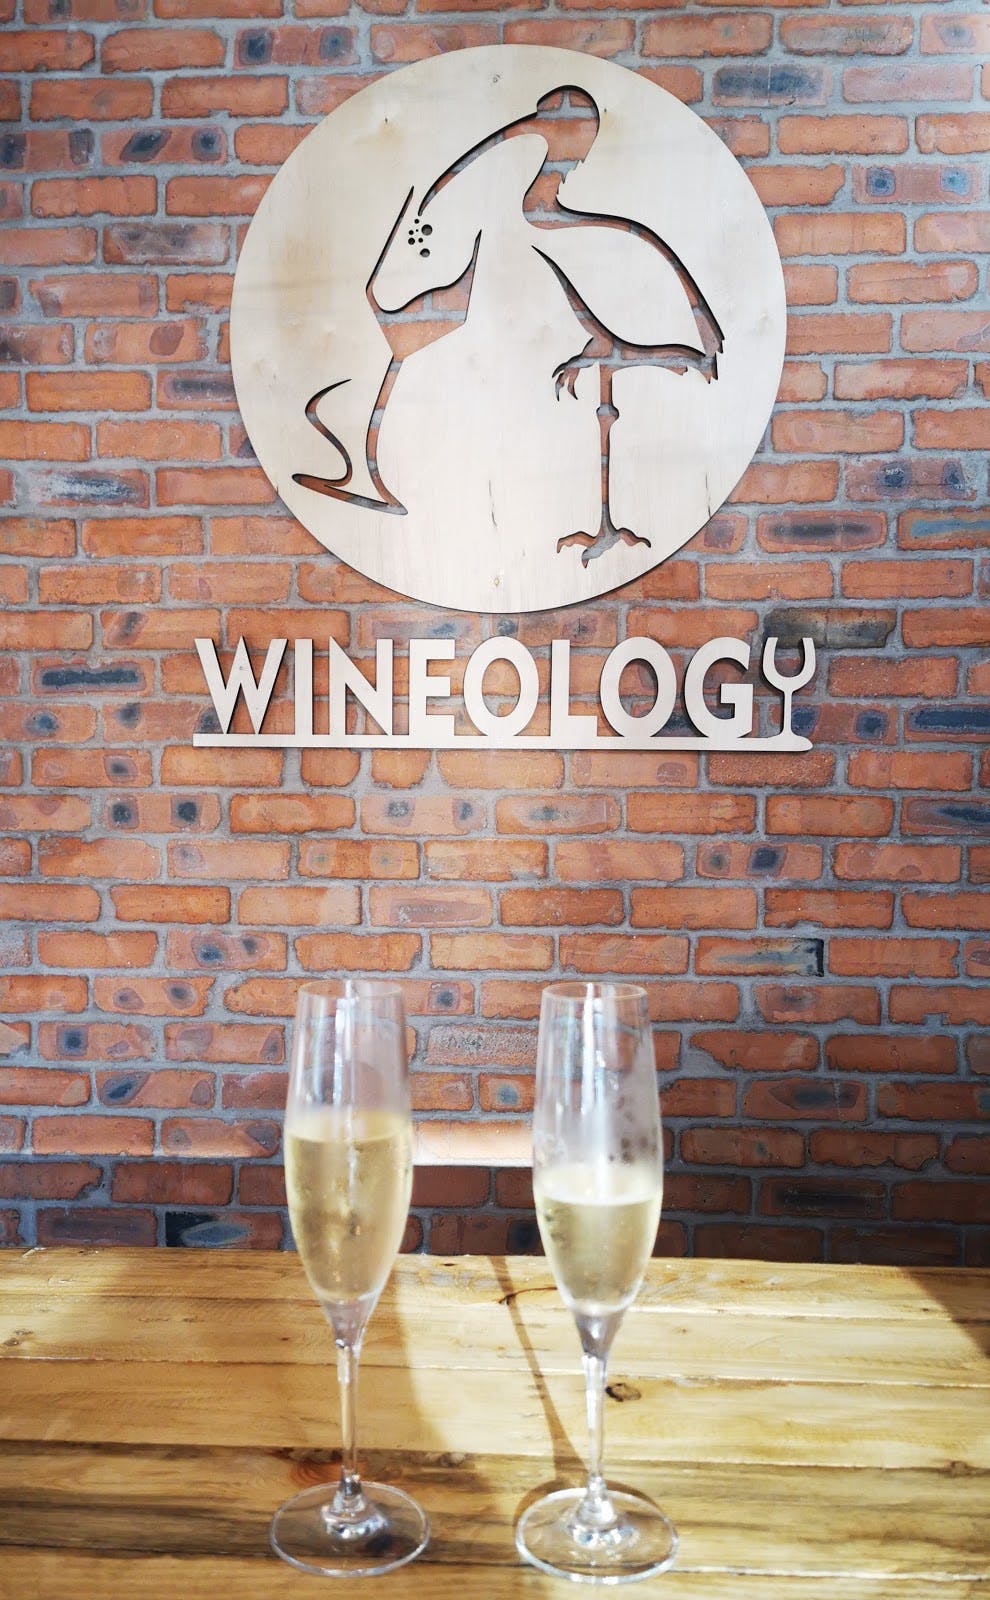 Image - Wineology